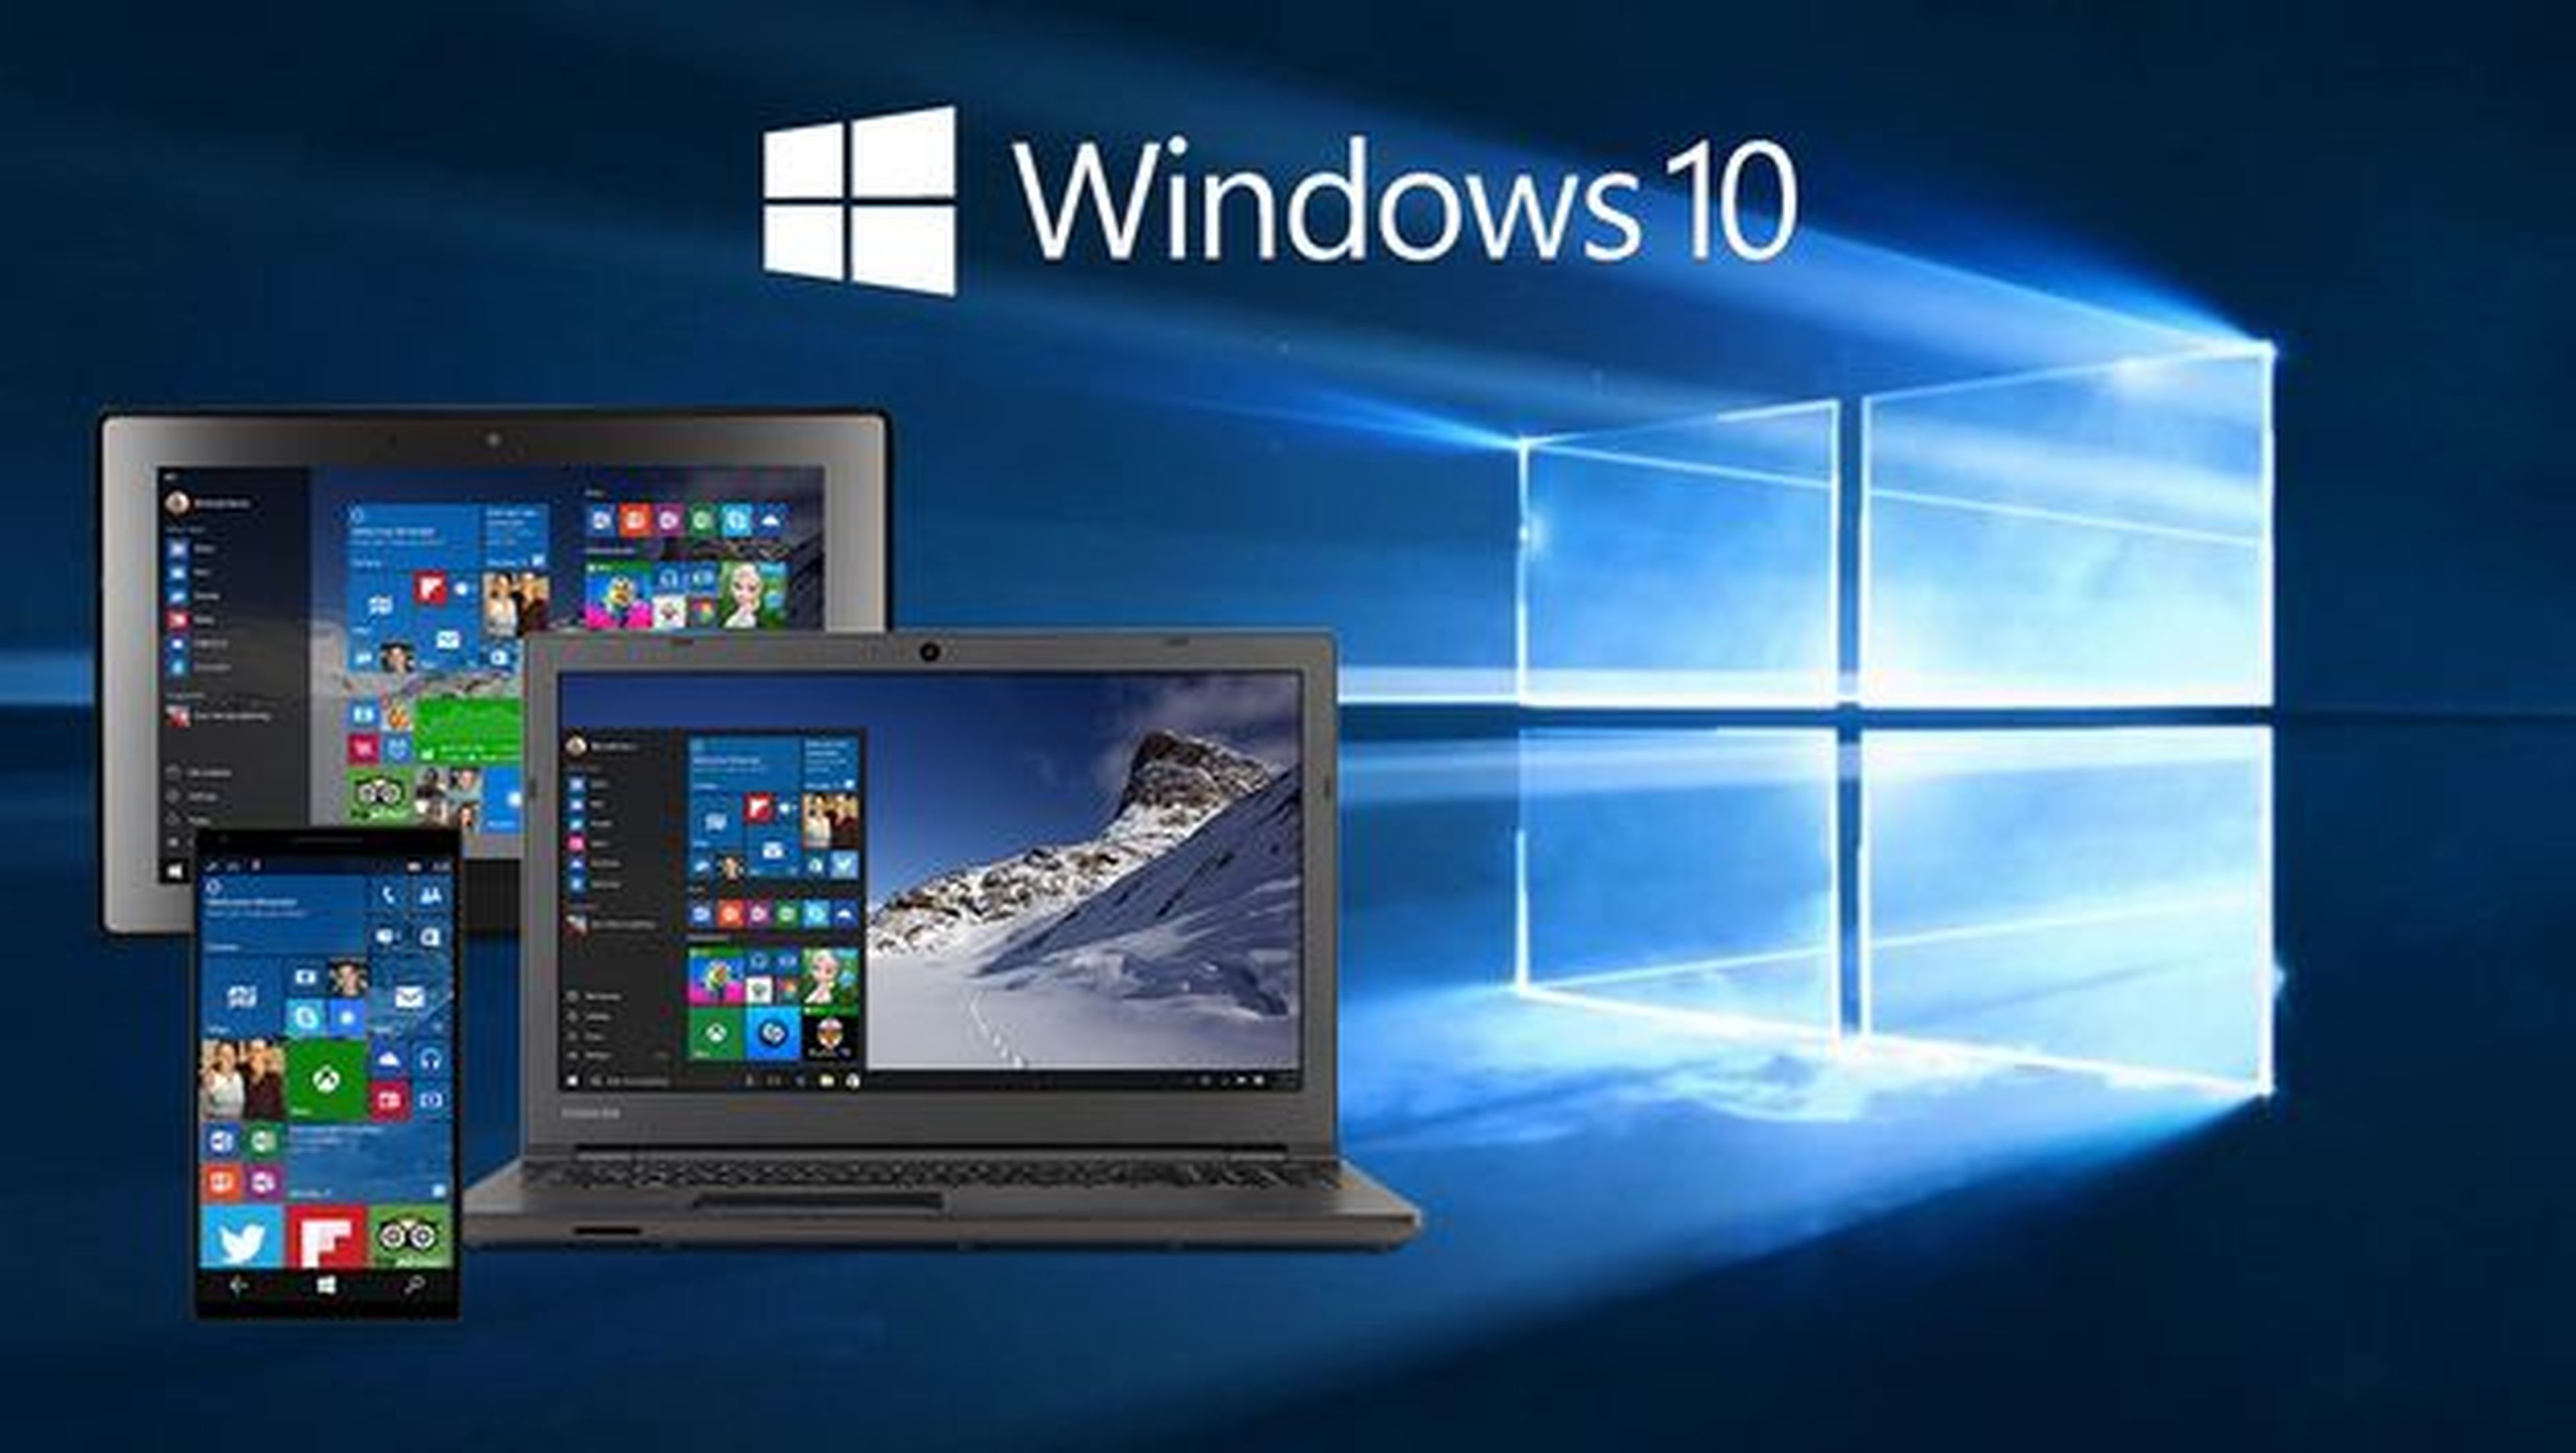 Windows 10 recibirá dos grandes actualizaciones en 2017